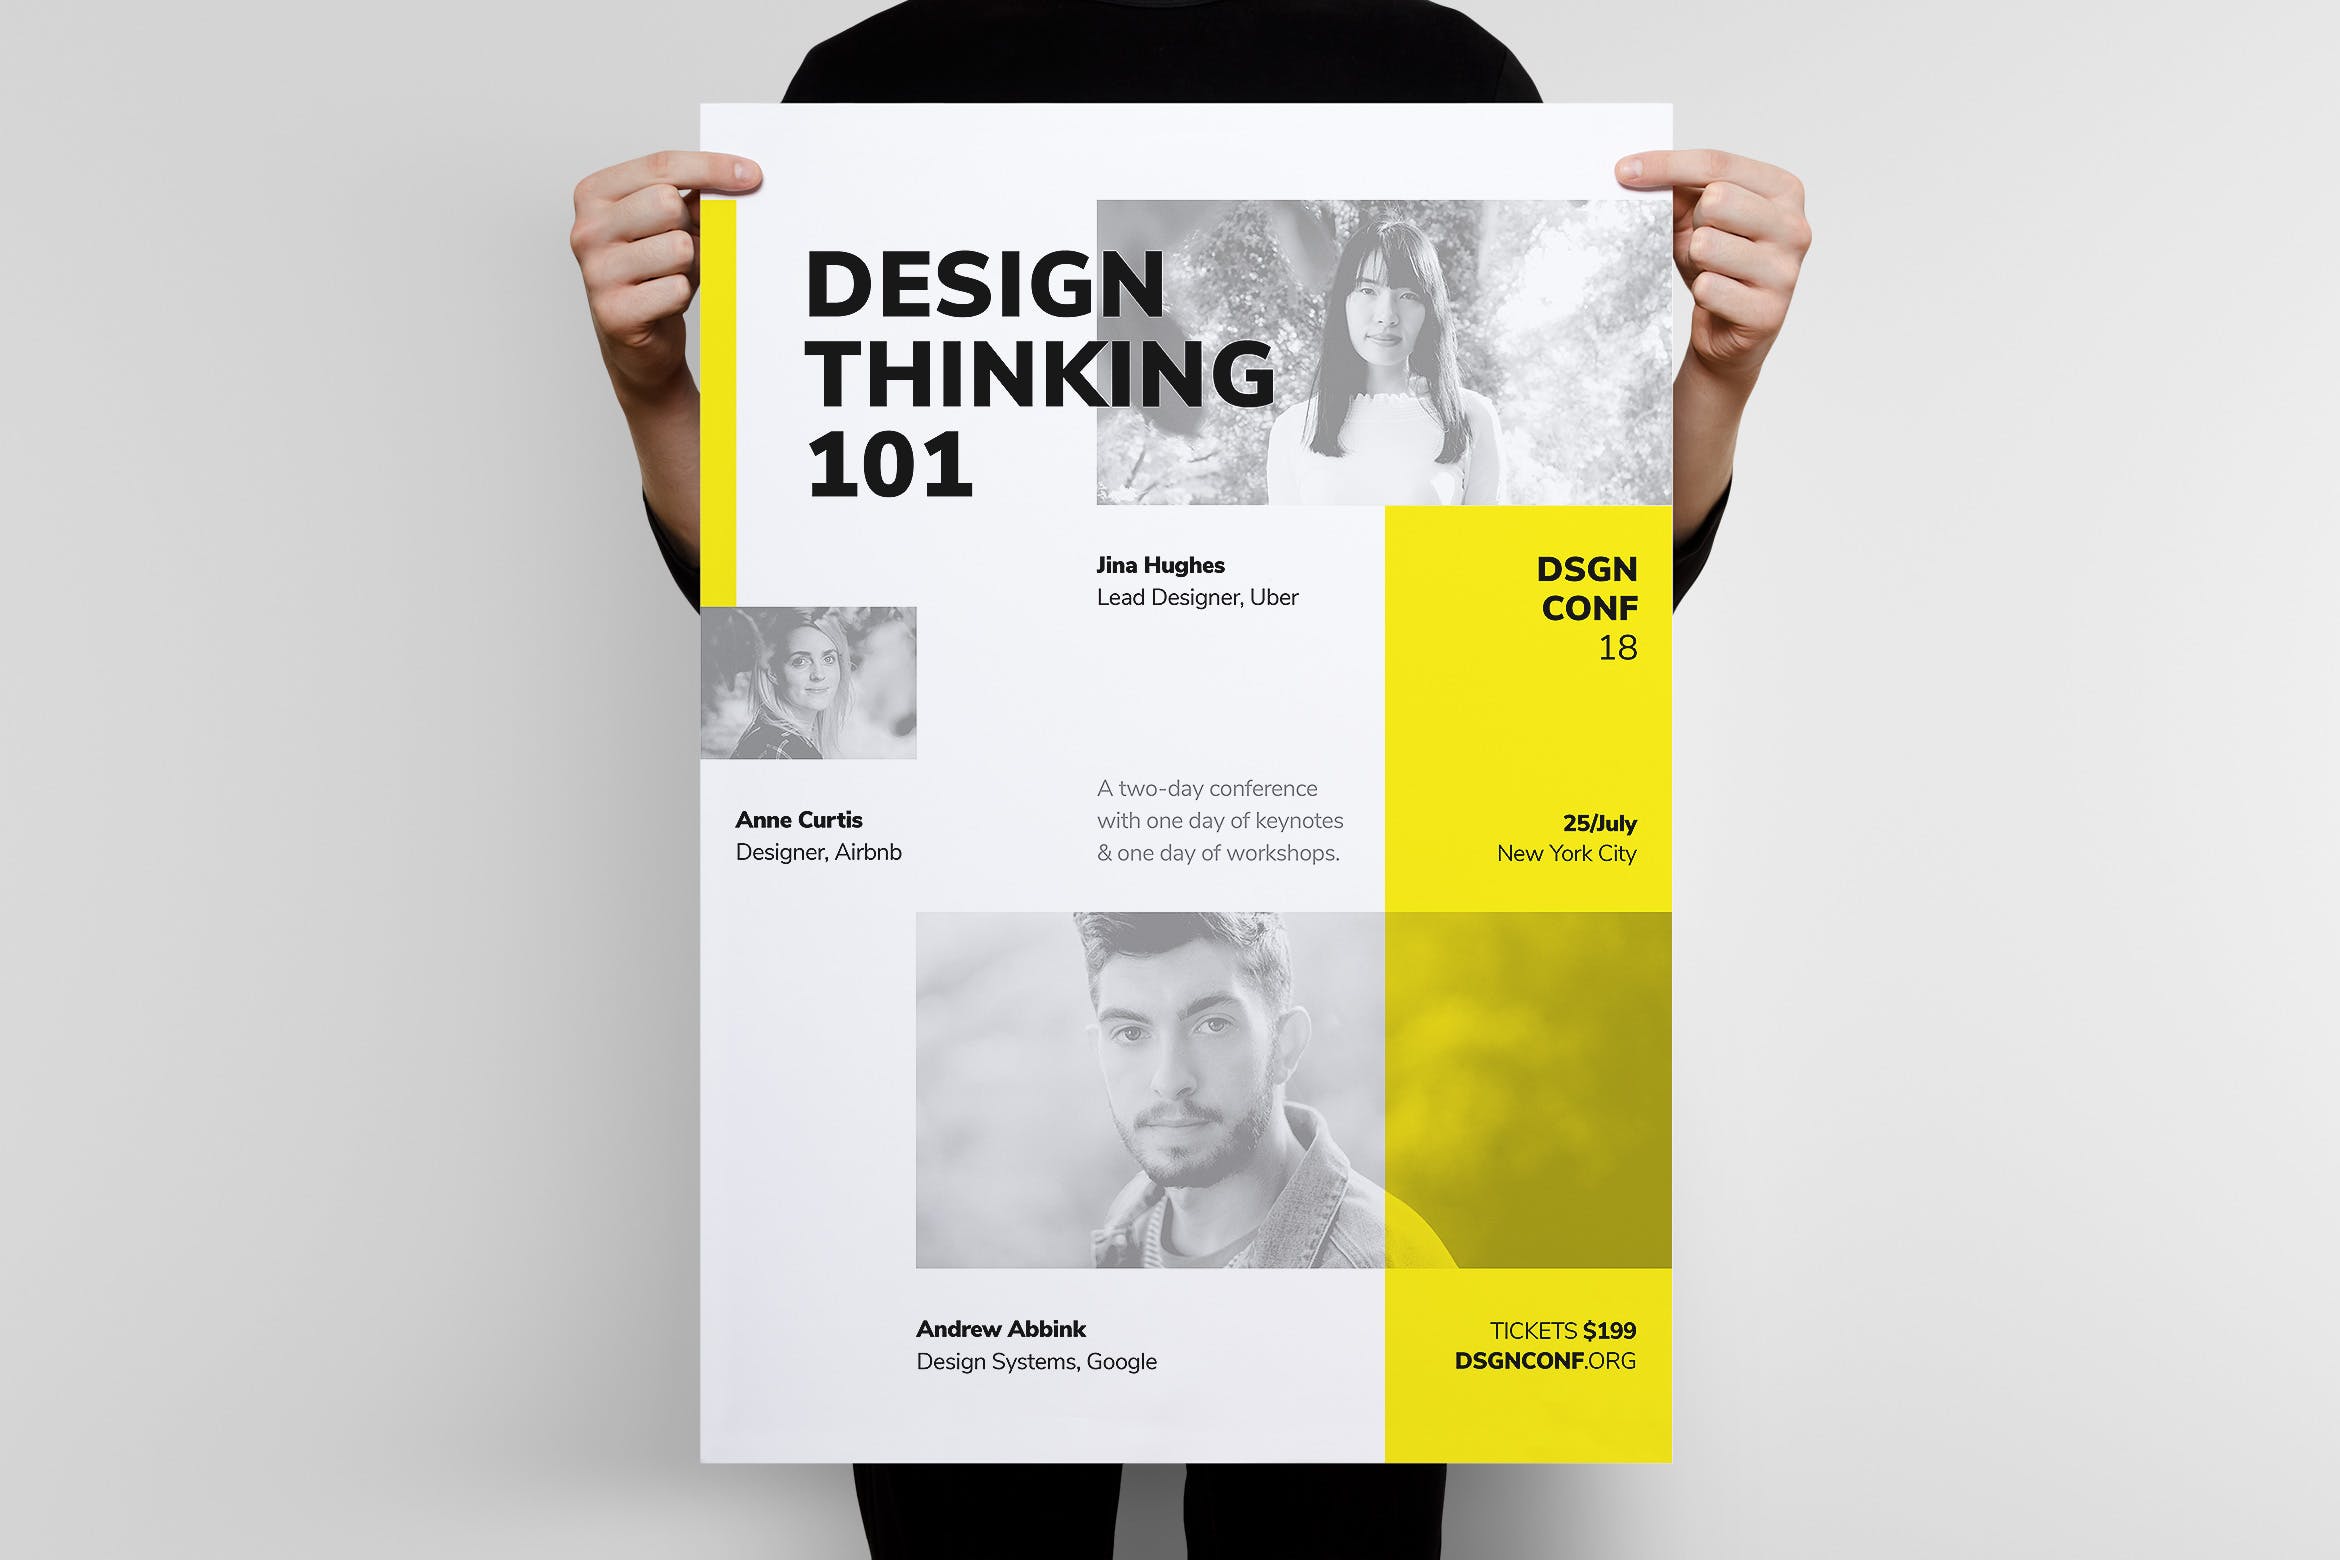 商业演讲/大会门票销售海报设计模板 DSGN Series 5 Poster / Flyer Template插图